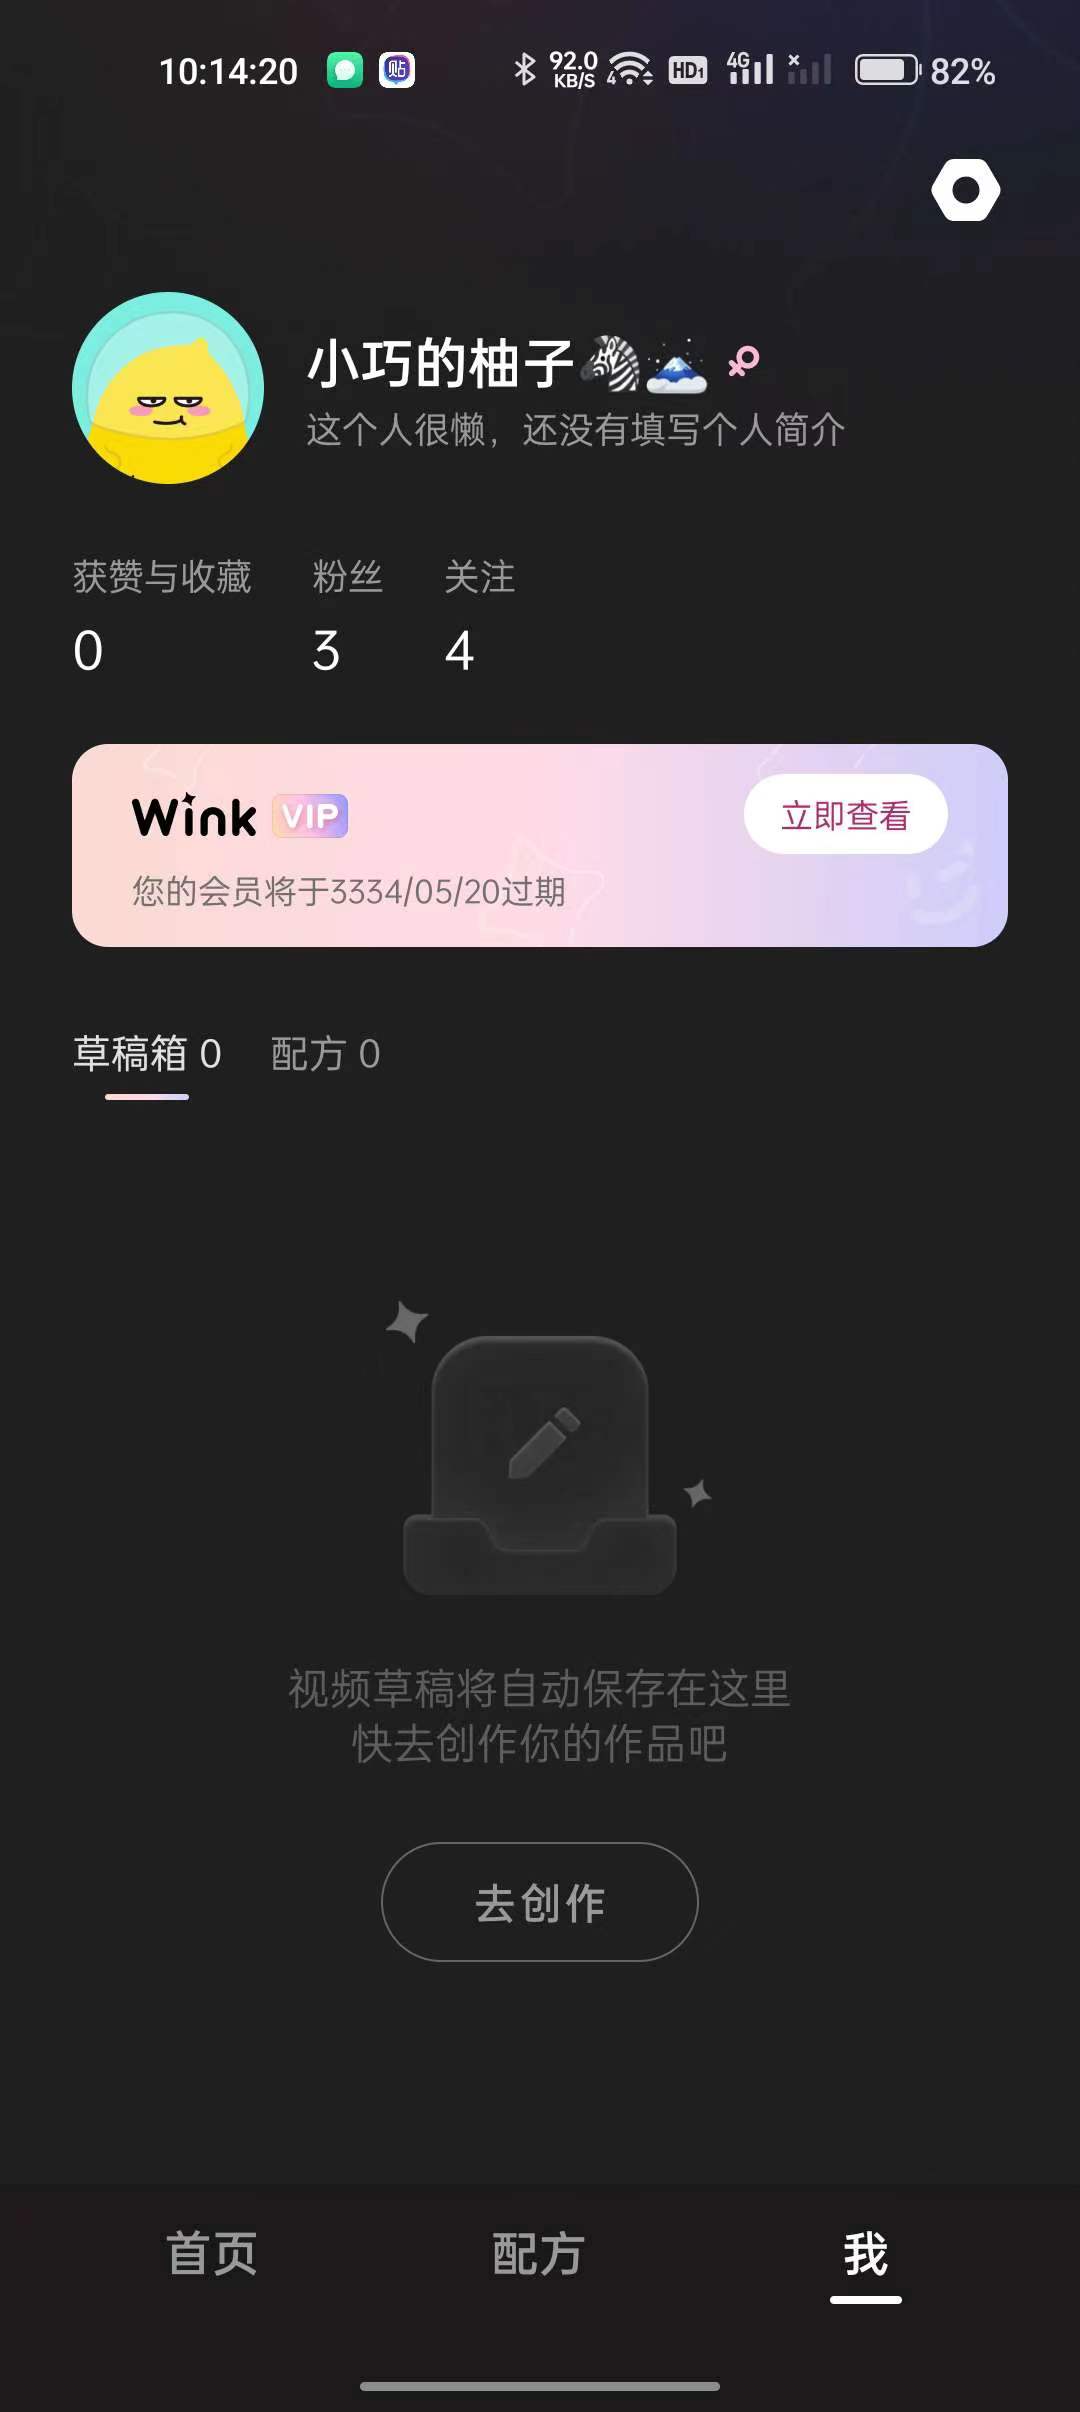 Wink1.5.8.0，画质修复，解锁会员。 【来源：赤道365论坛】 帖子ID:19067 会员,解锁,修复,画质